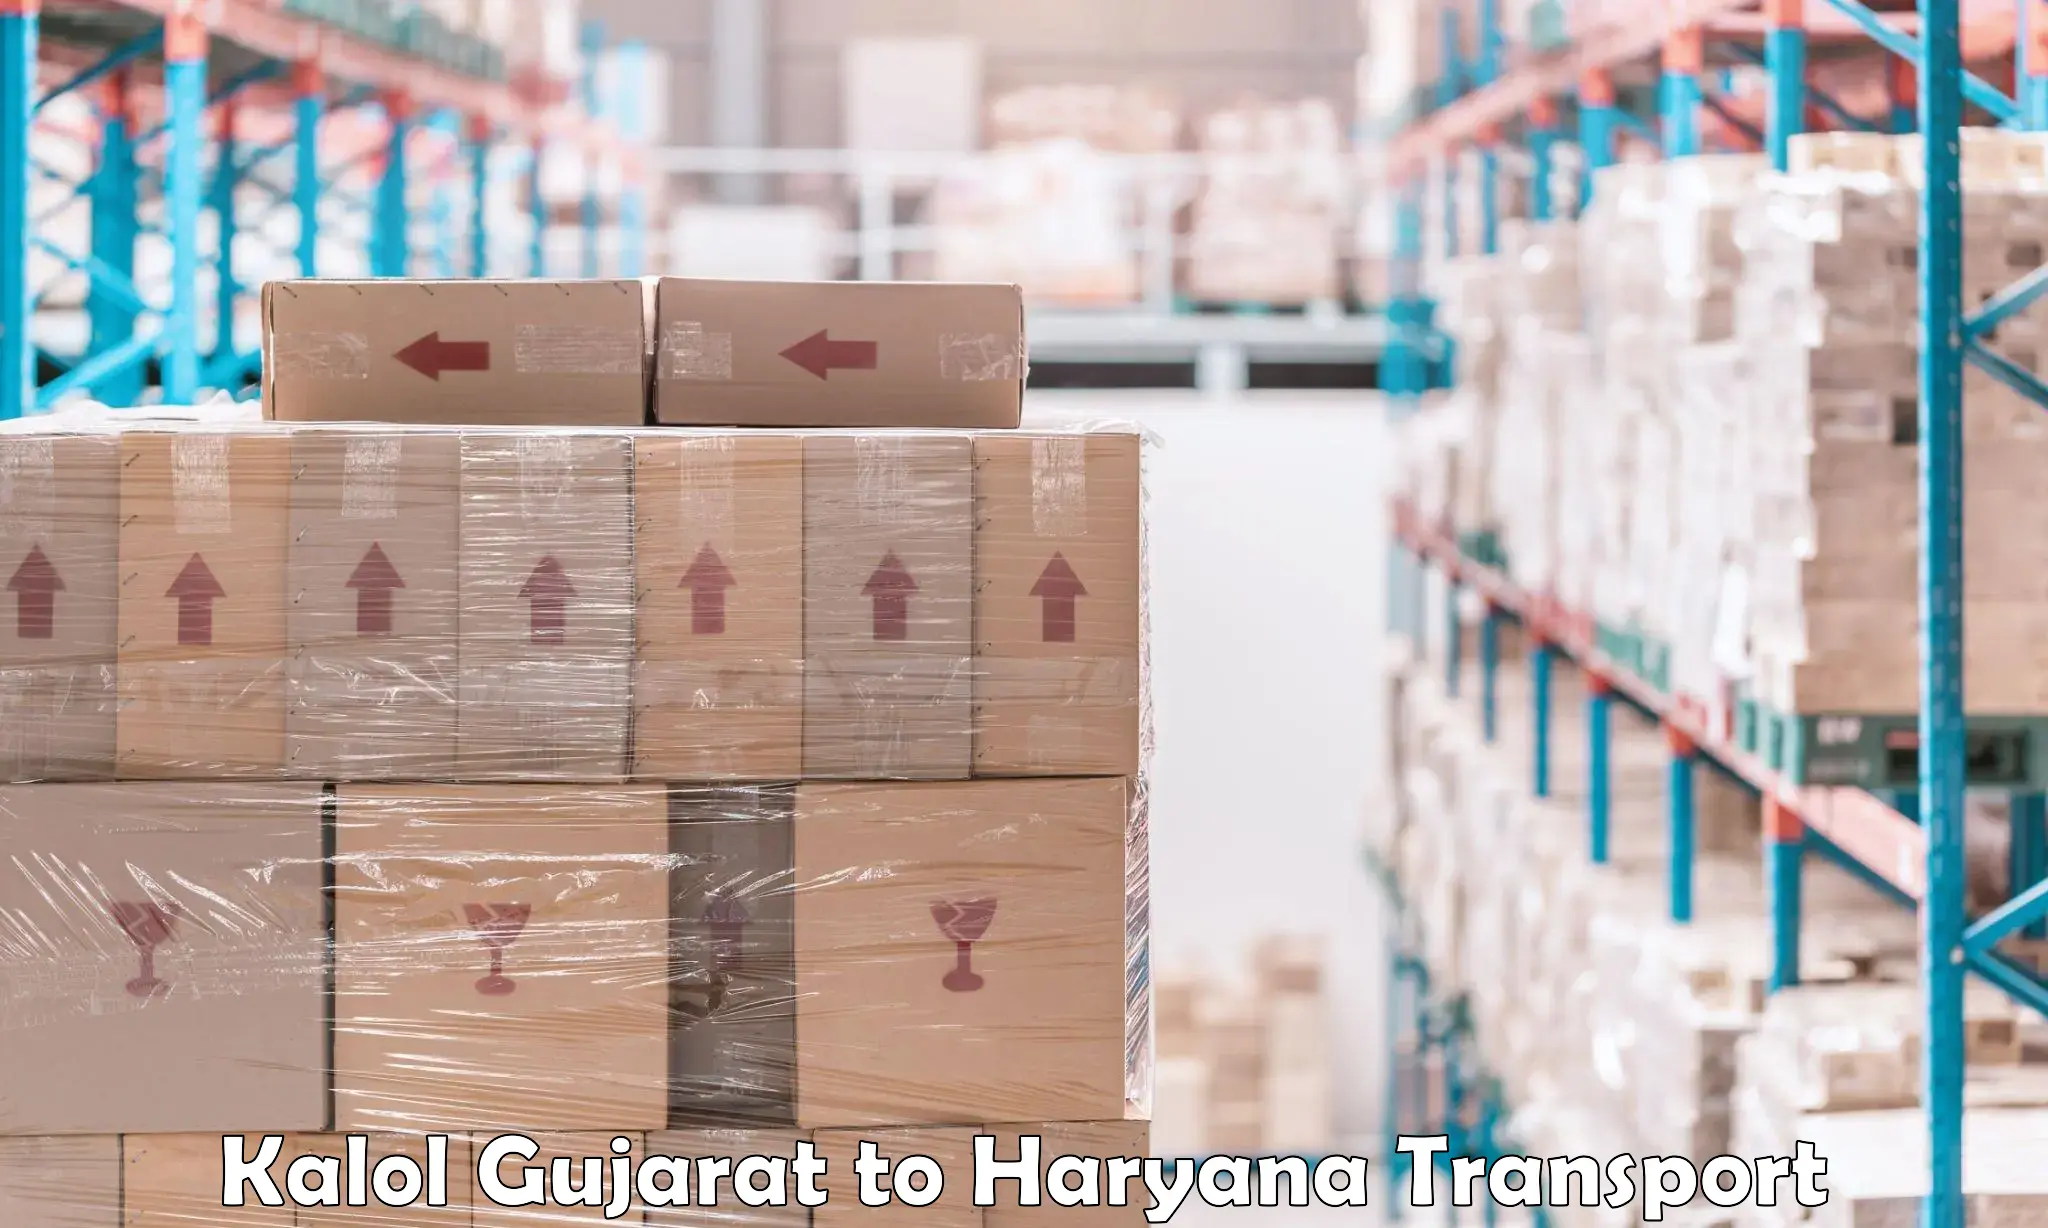 Shipping partner Kalol Gujarat to Charkhi Dadri